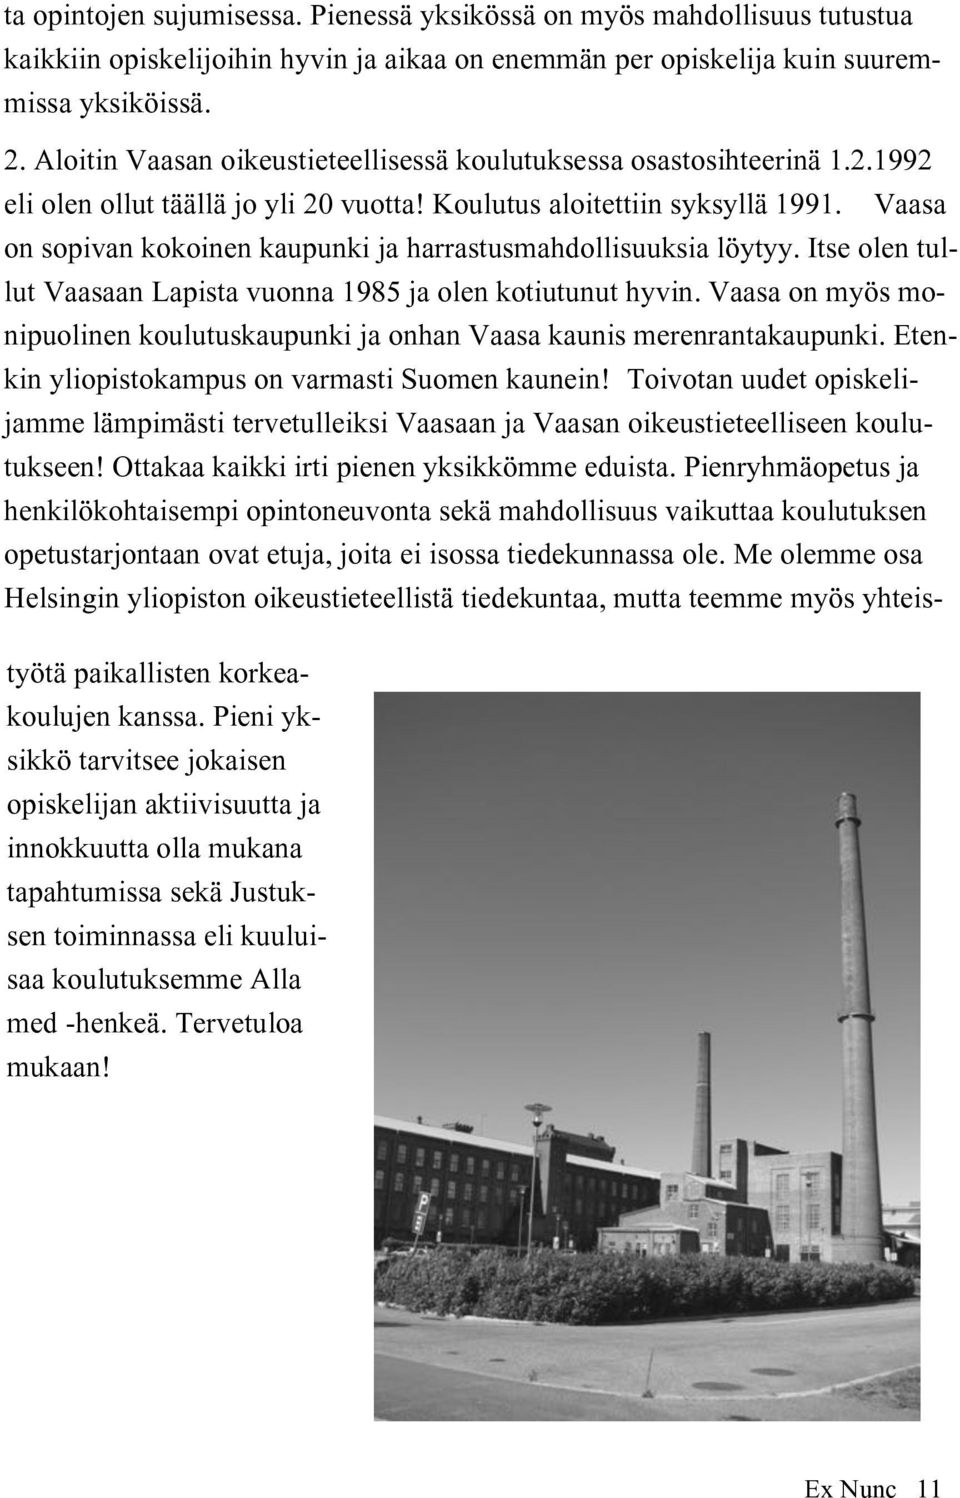 Vaasa on sopivan kokoinen kaupunki ja harrastusmahdollisuuksia löytyy. Itse olen tullut Vaasaan Lapista vuonna 1985 ja olen kotiutunut hyvin.